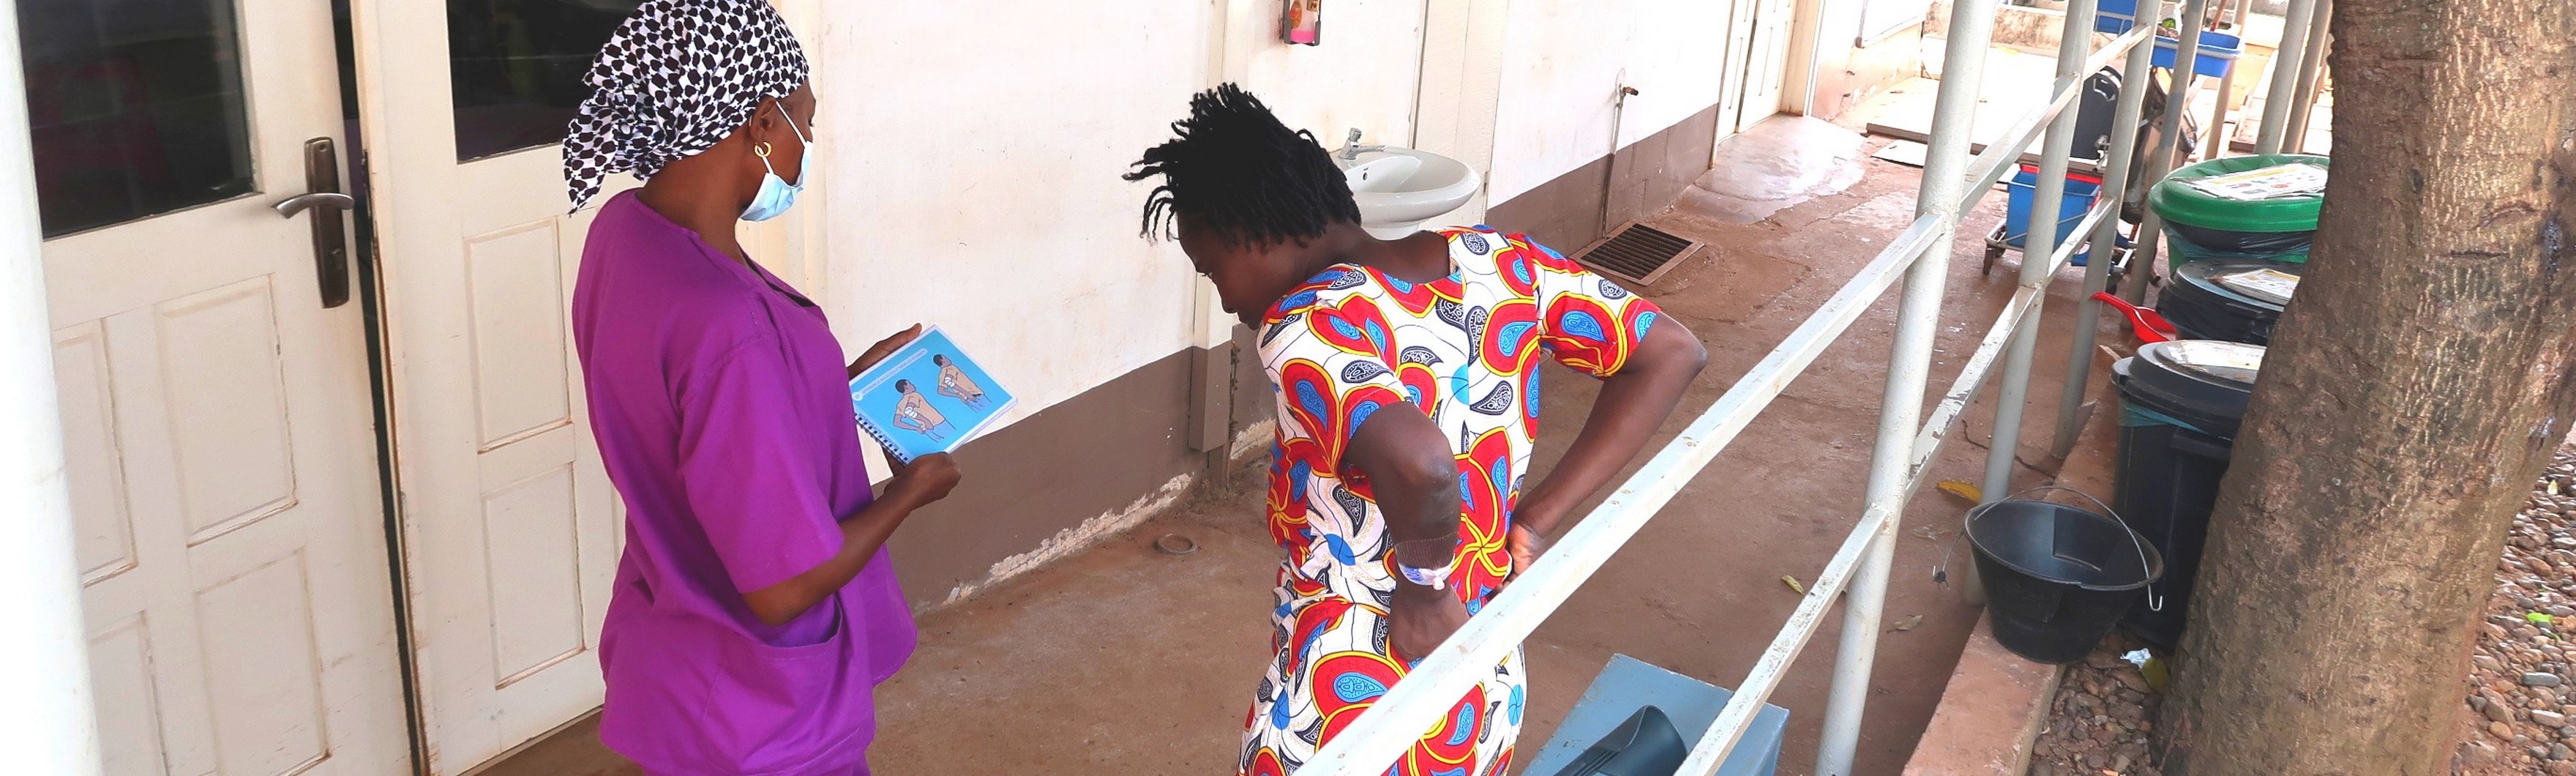 Une kinésithérapeute utilise les cartes de poche AIM-T avec une patiente pour évaluer son niveau d'indépendance après un traumatisme à l'hôpital MSF Sica à Bangui, en République centrafricaine.